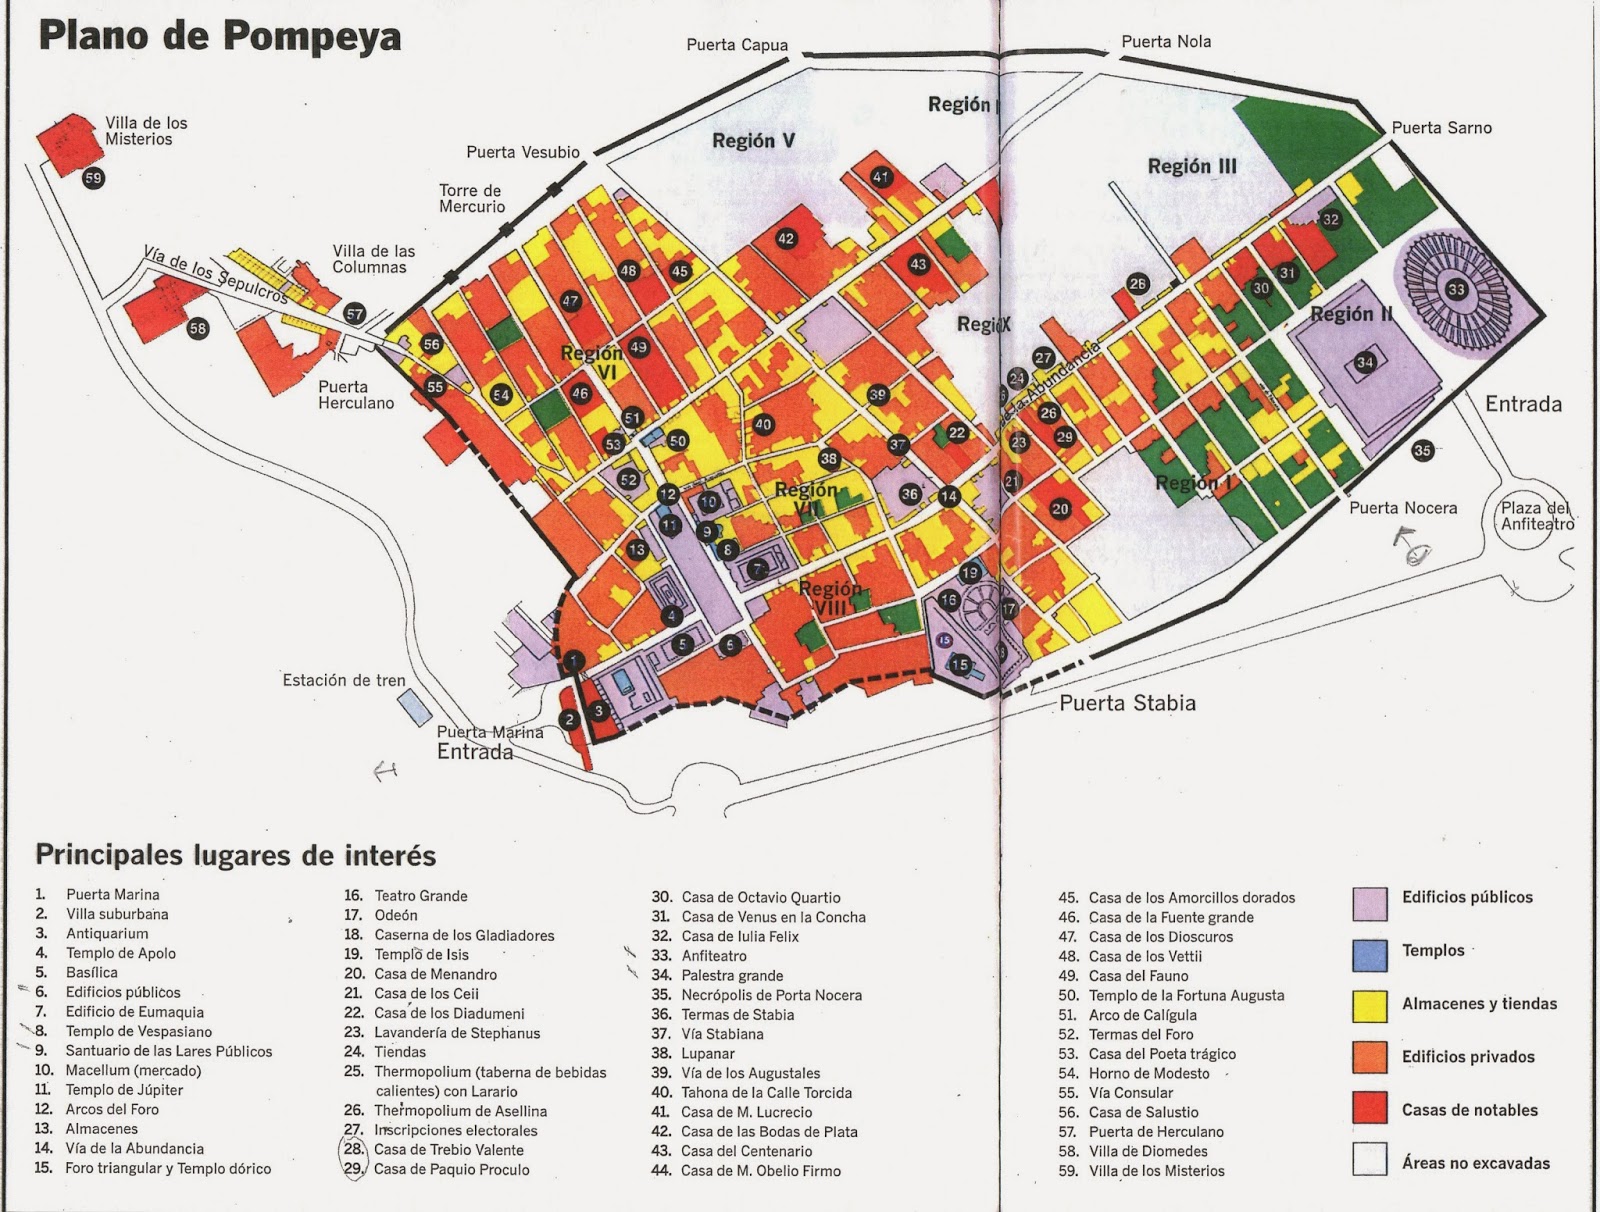 Viajar a Pompeya 2014 Planos de Pompeya